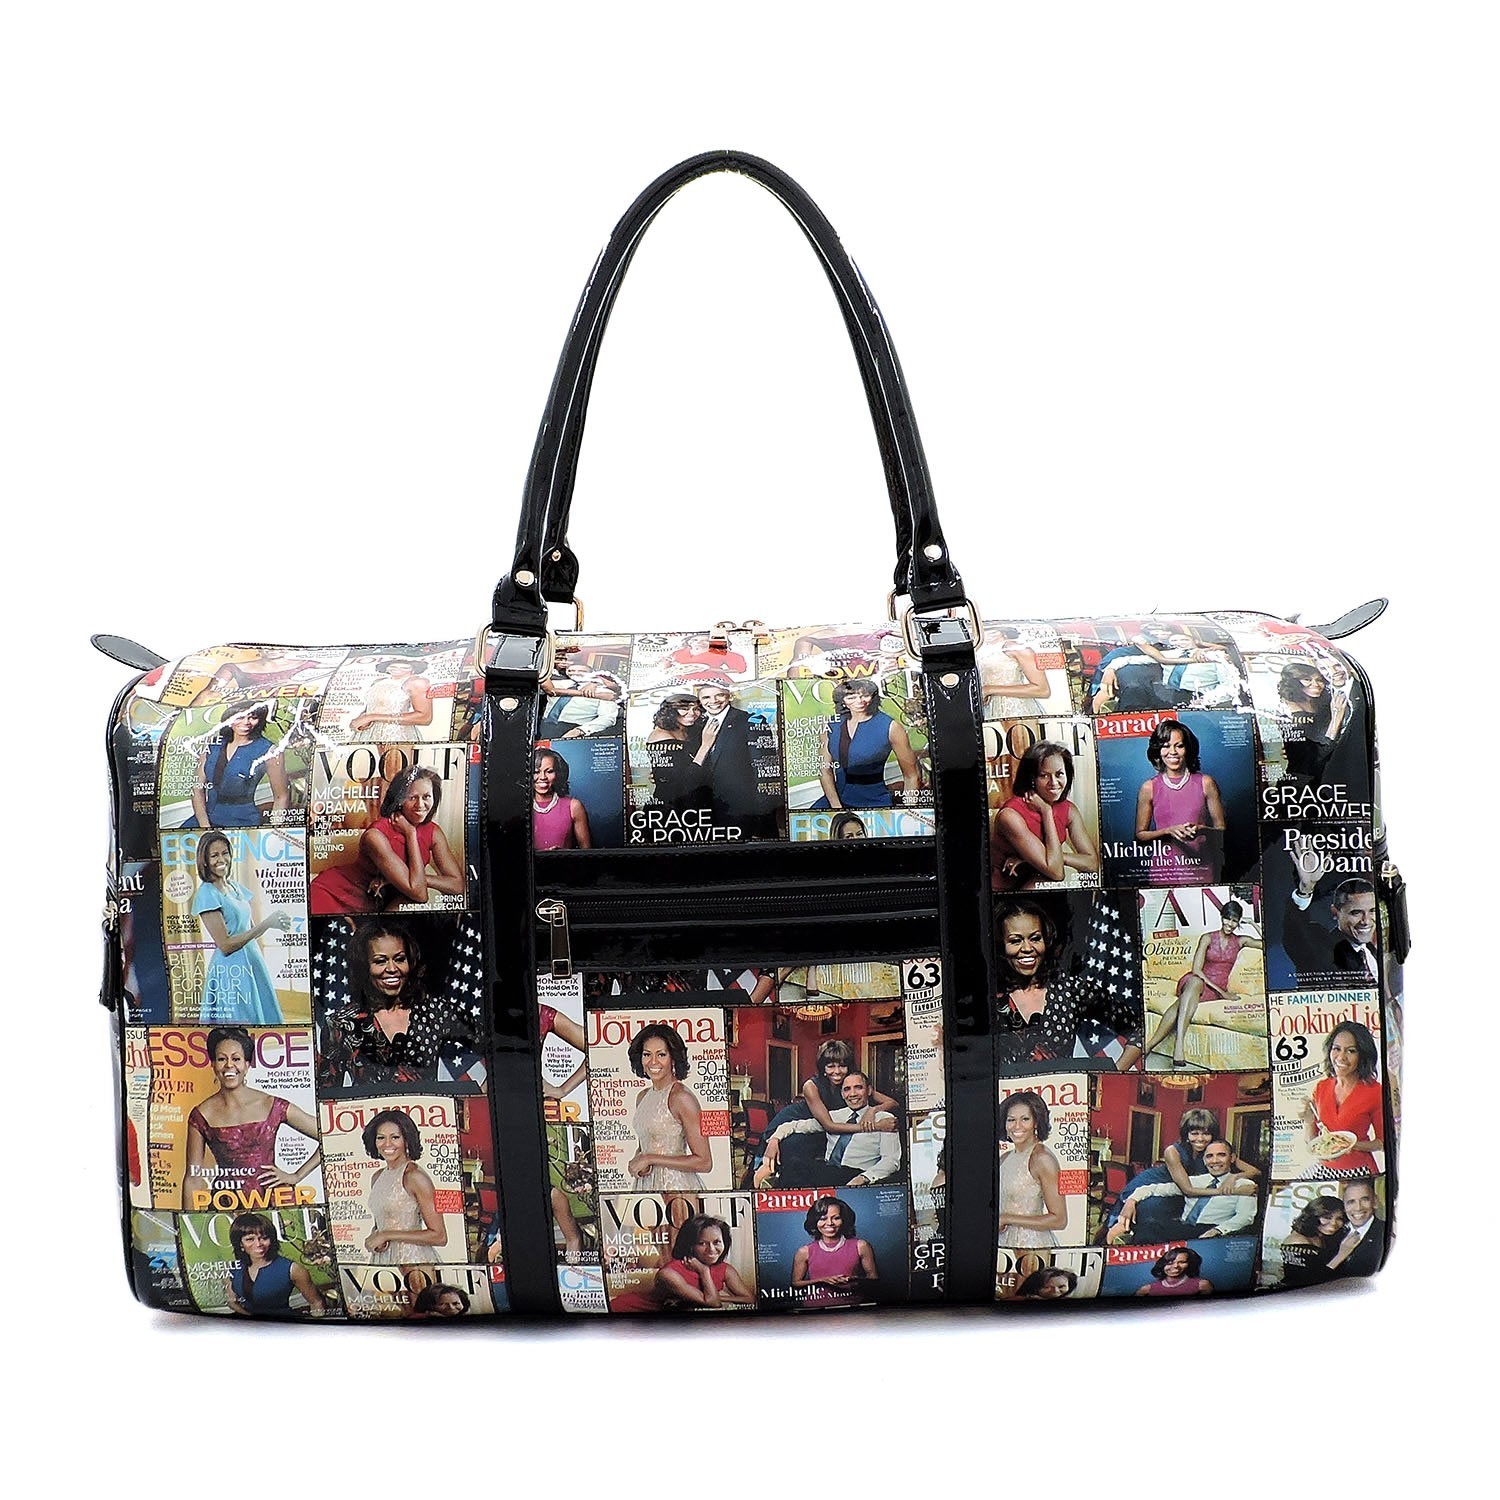 Michelle Obama Handbag Strap Muti Colors 2-in-1 Purse #3612 Muti 